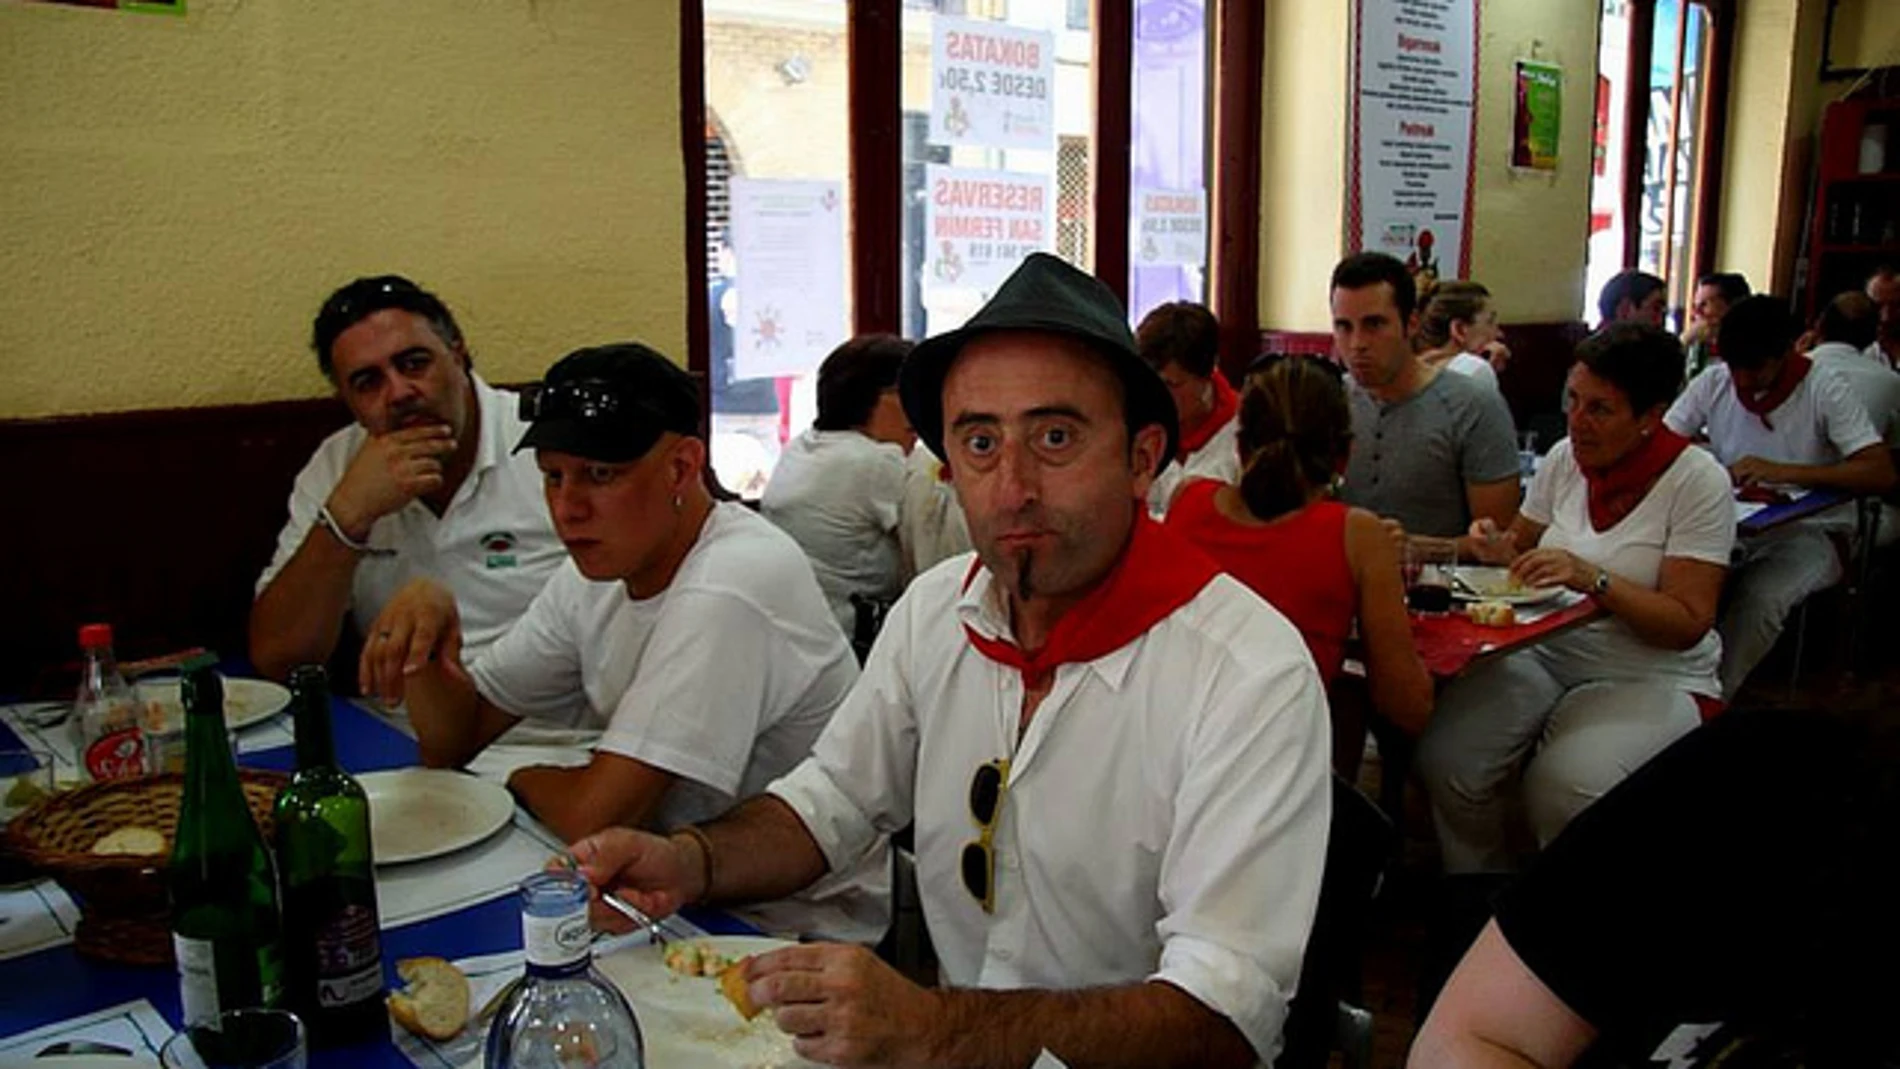 Un comedor solidario recauda dinero aprovechando las fiestas de San Fermín